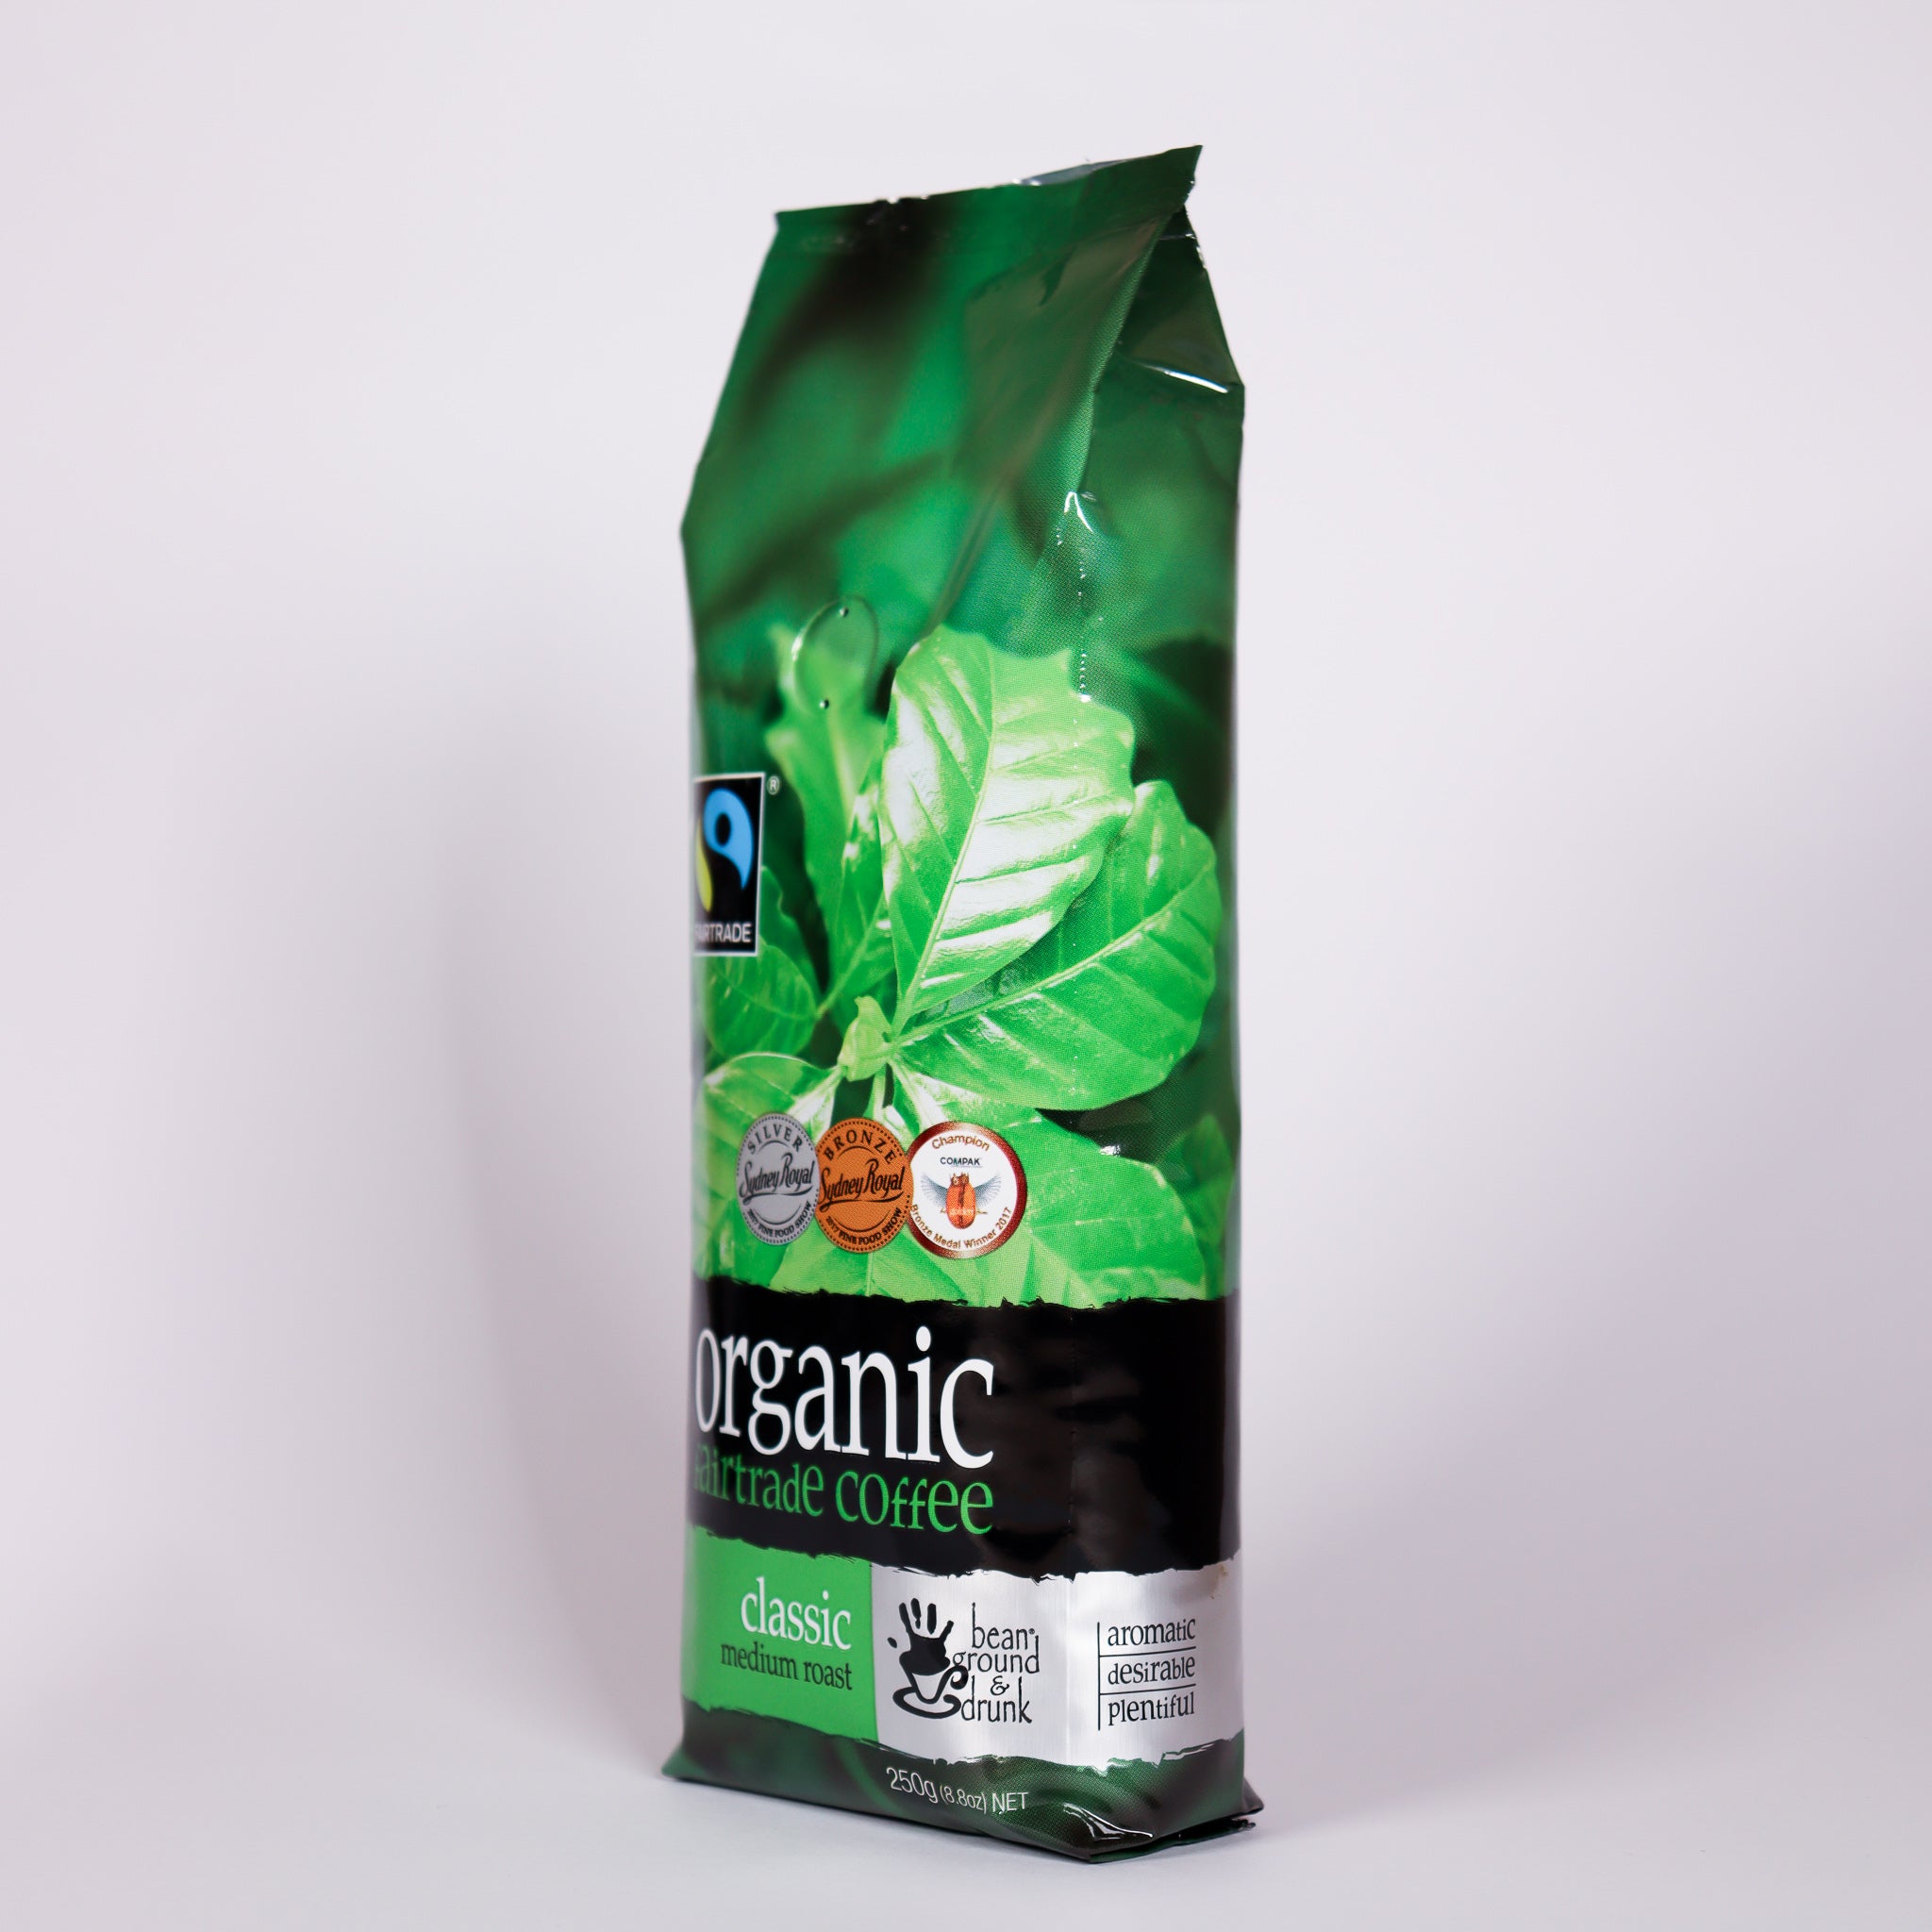 Bean Ground & Drunk Organic Classic Fairtrade Coffee Beans 250g